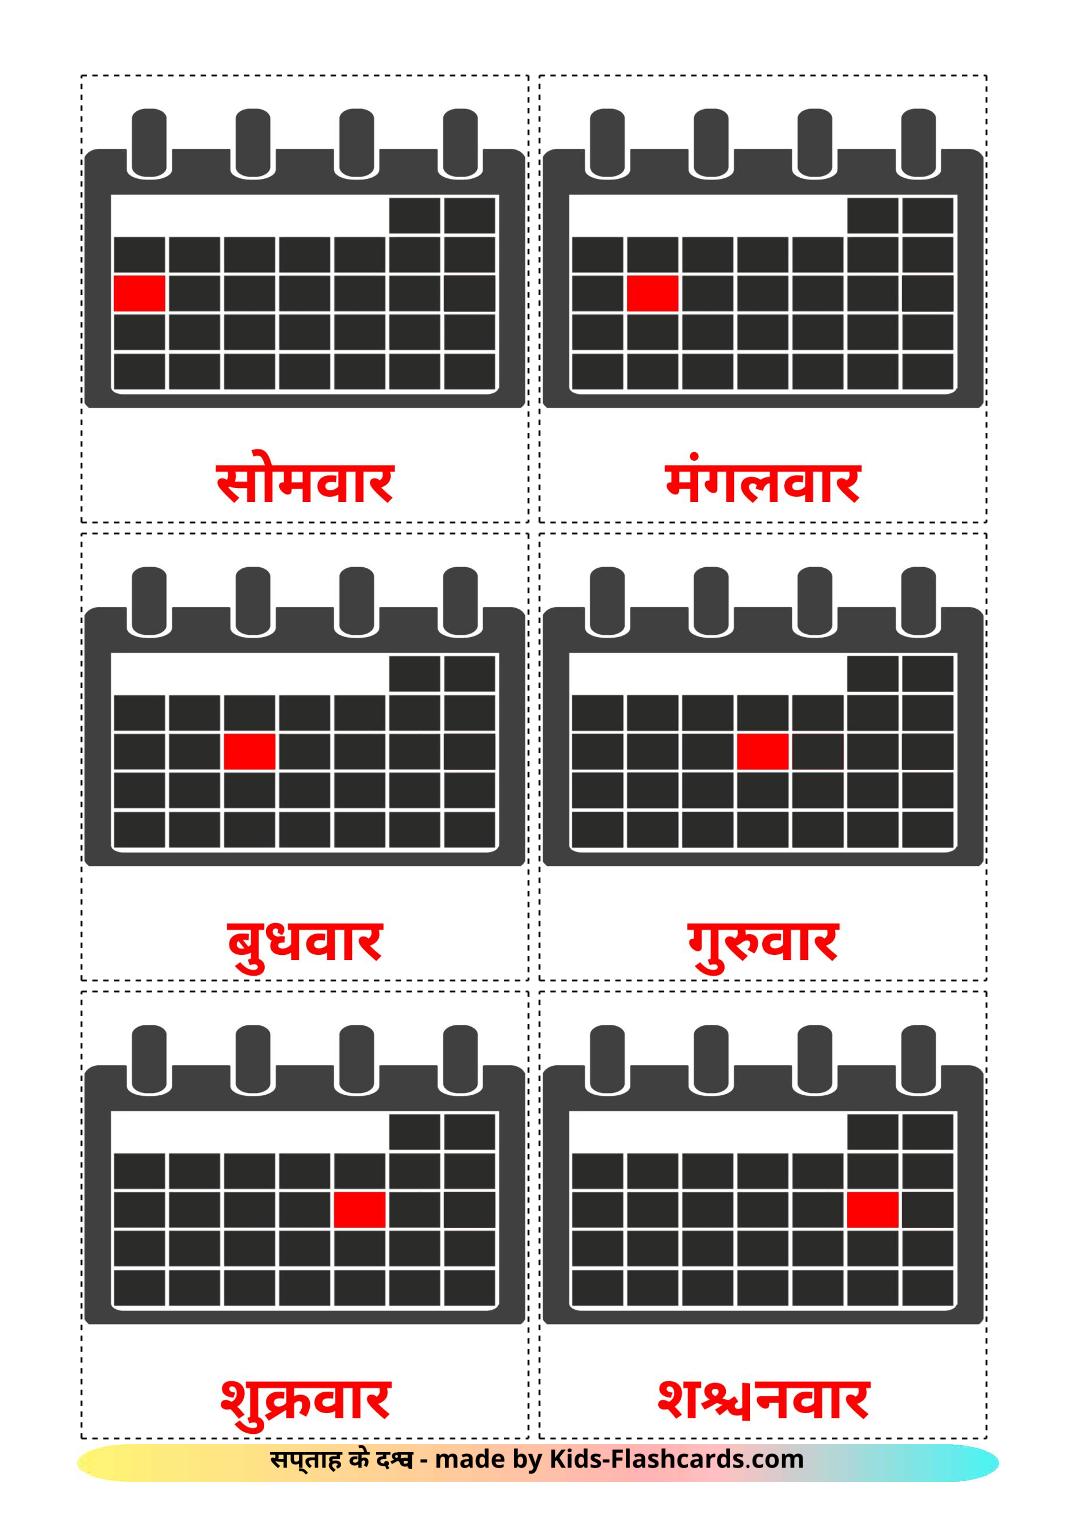 Wochentage - 12 kostenlose, druckbare Hindi Flashcards 